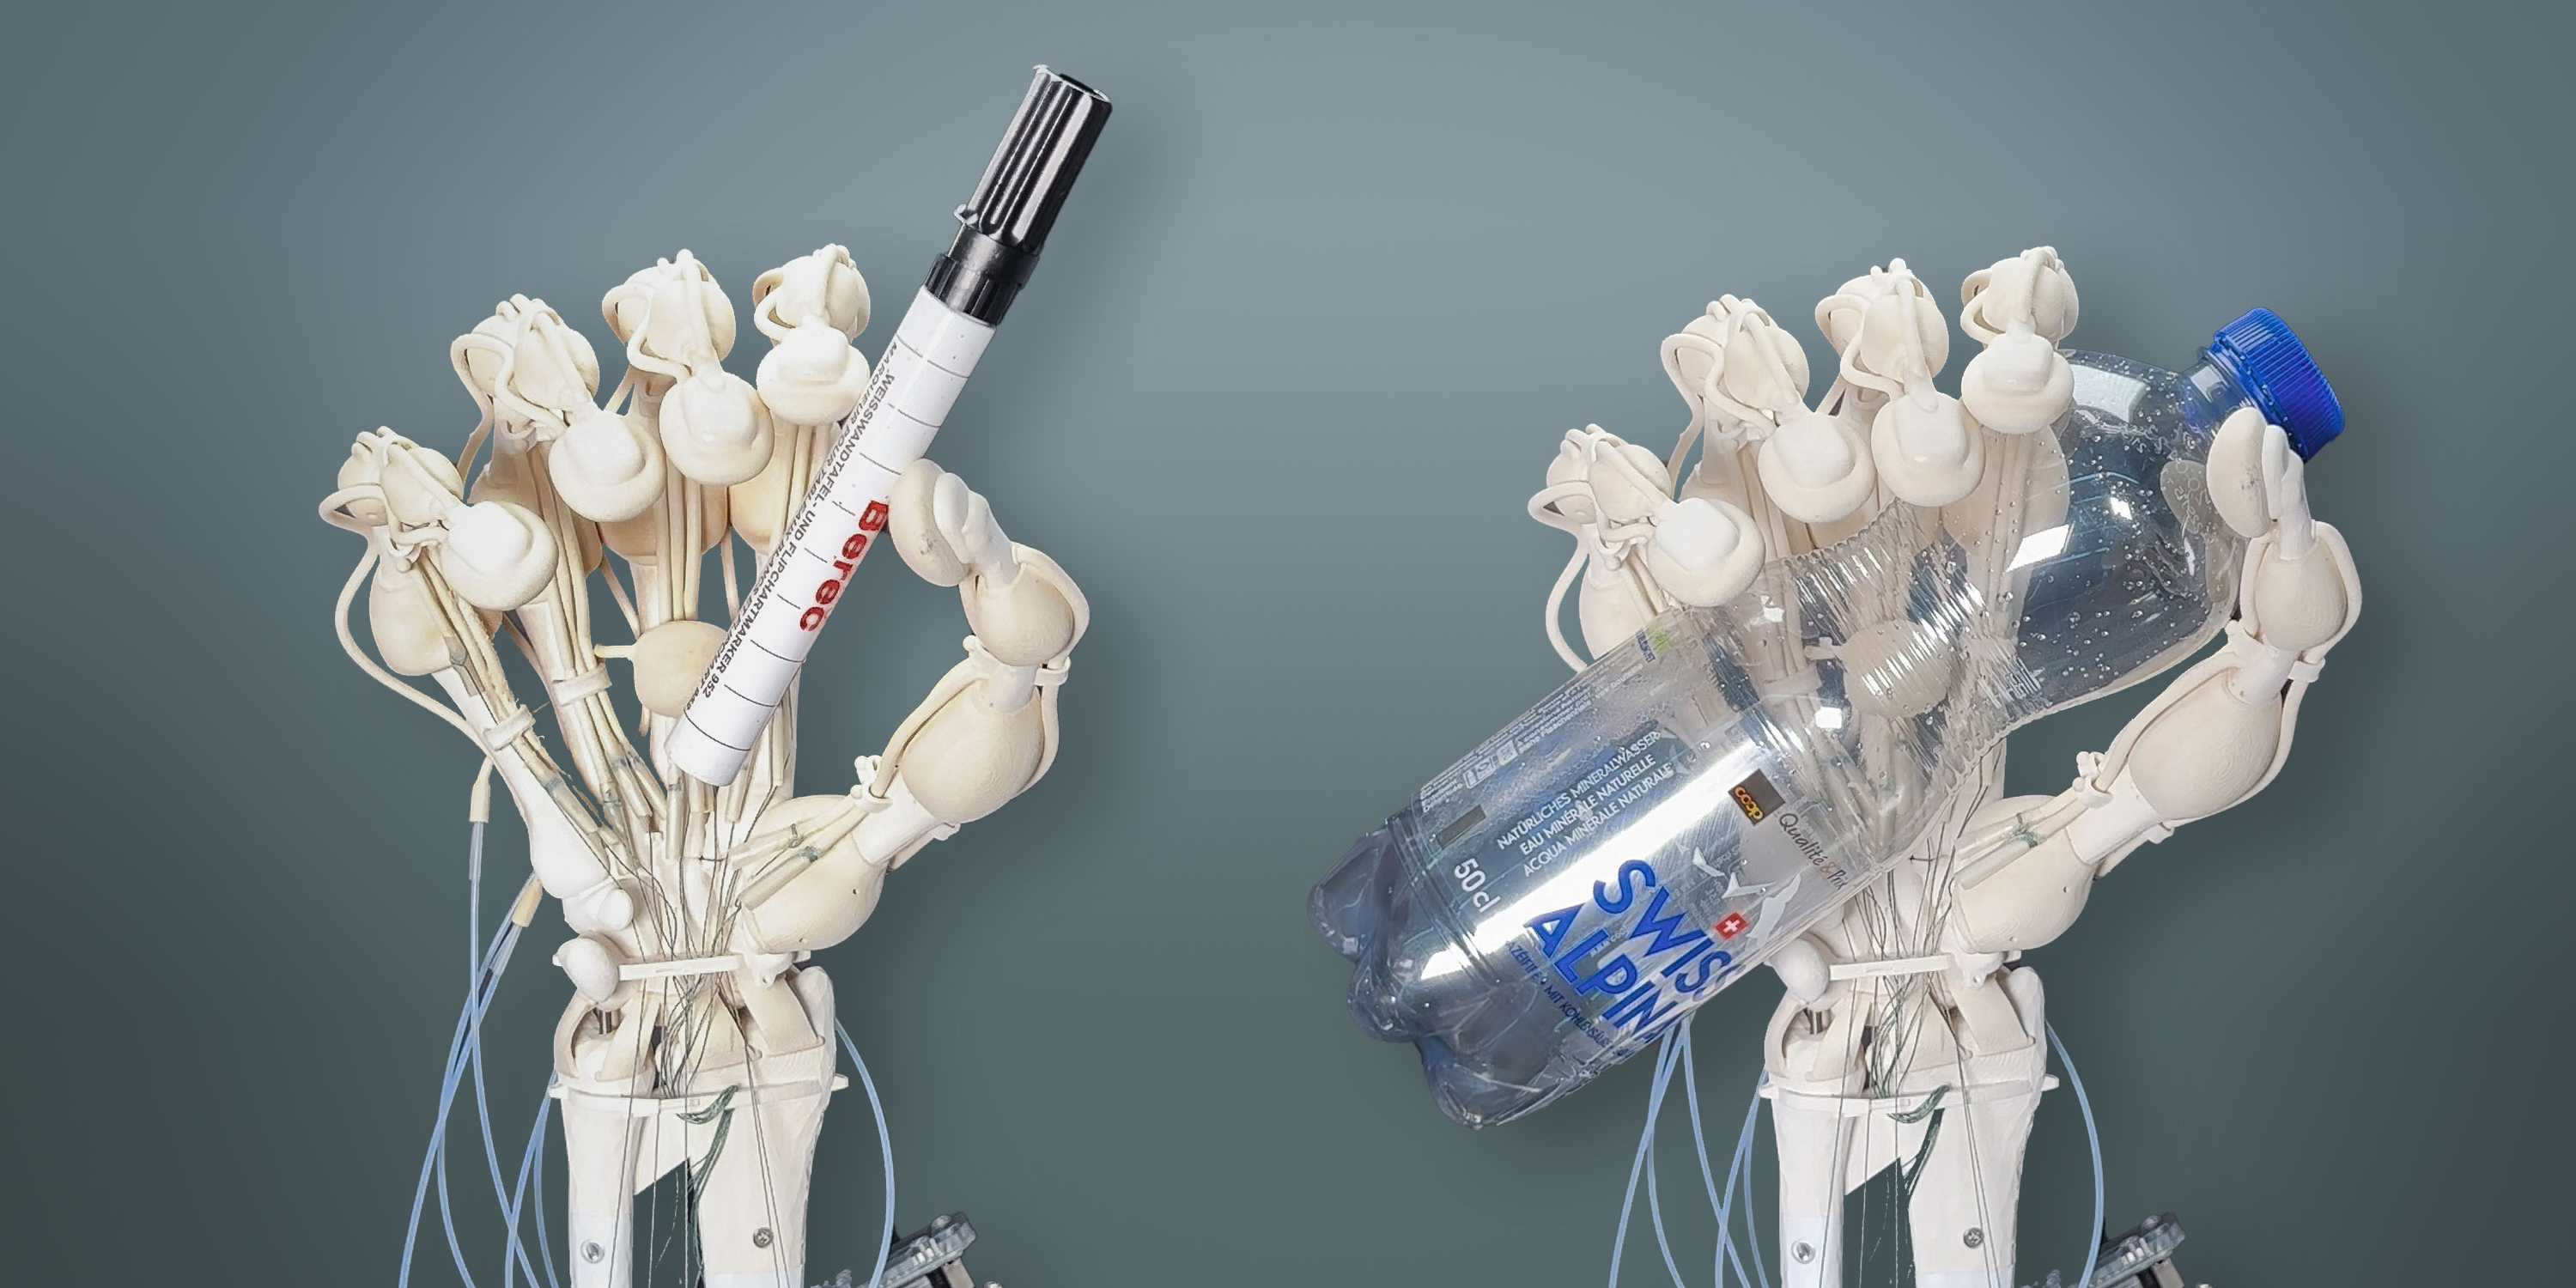 Investigadores de la ETH de Zúrich han logrado imprimir por primera vez un brazo robótico con huesos, ligamentos y tendones